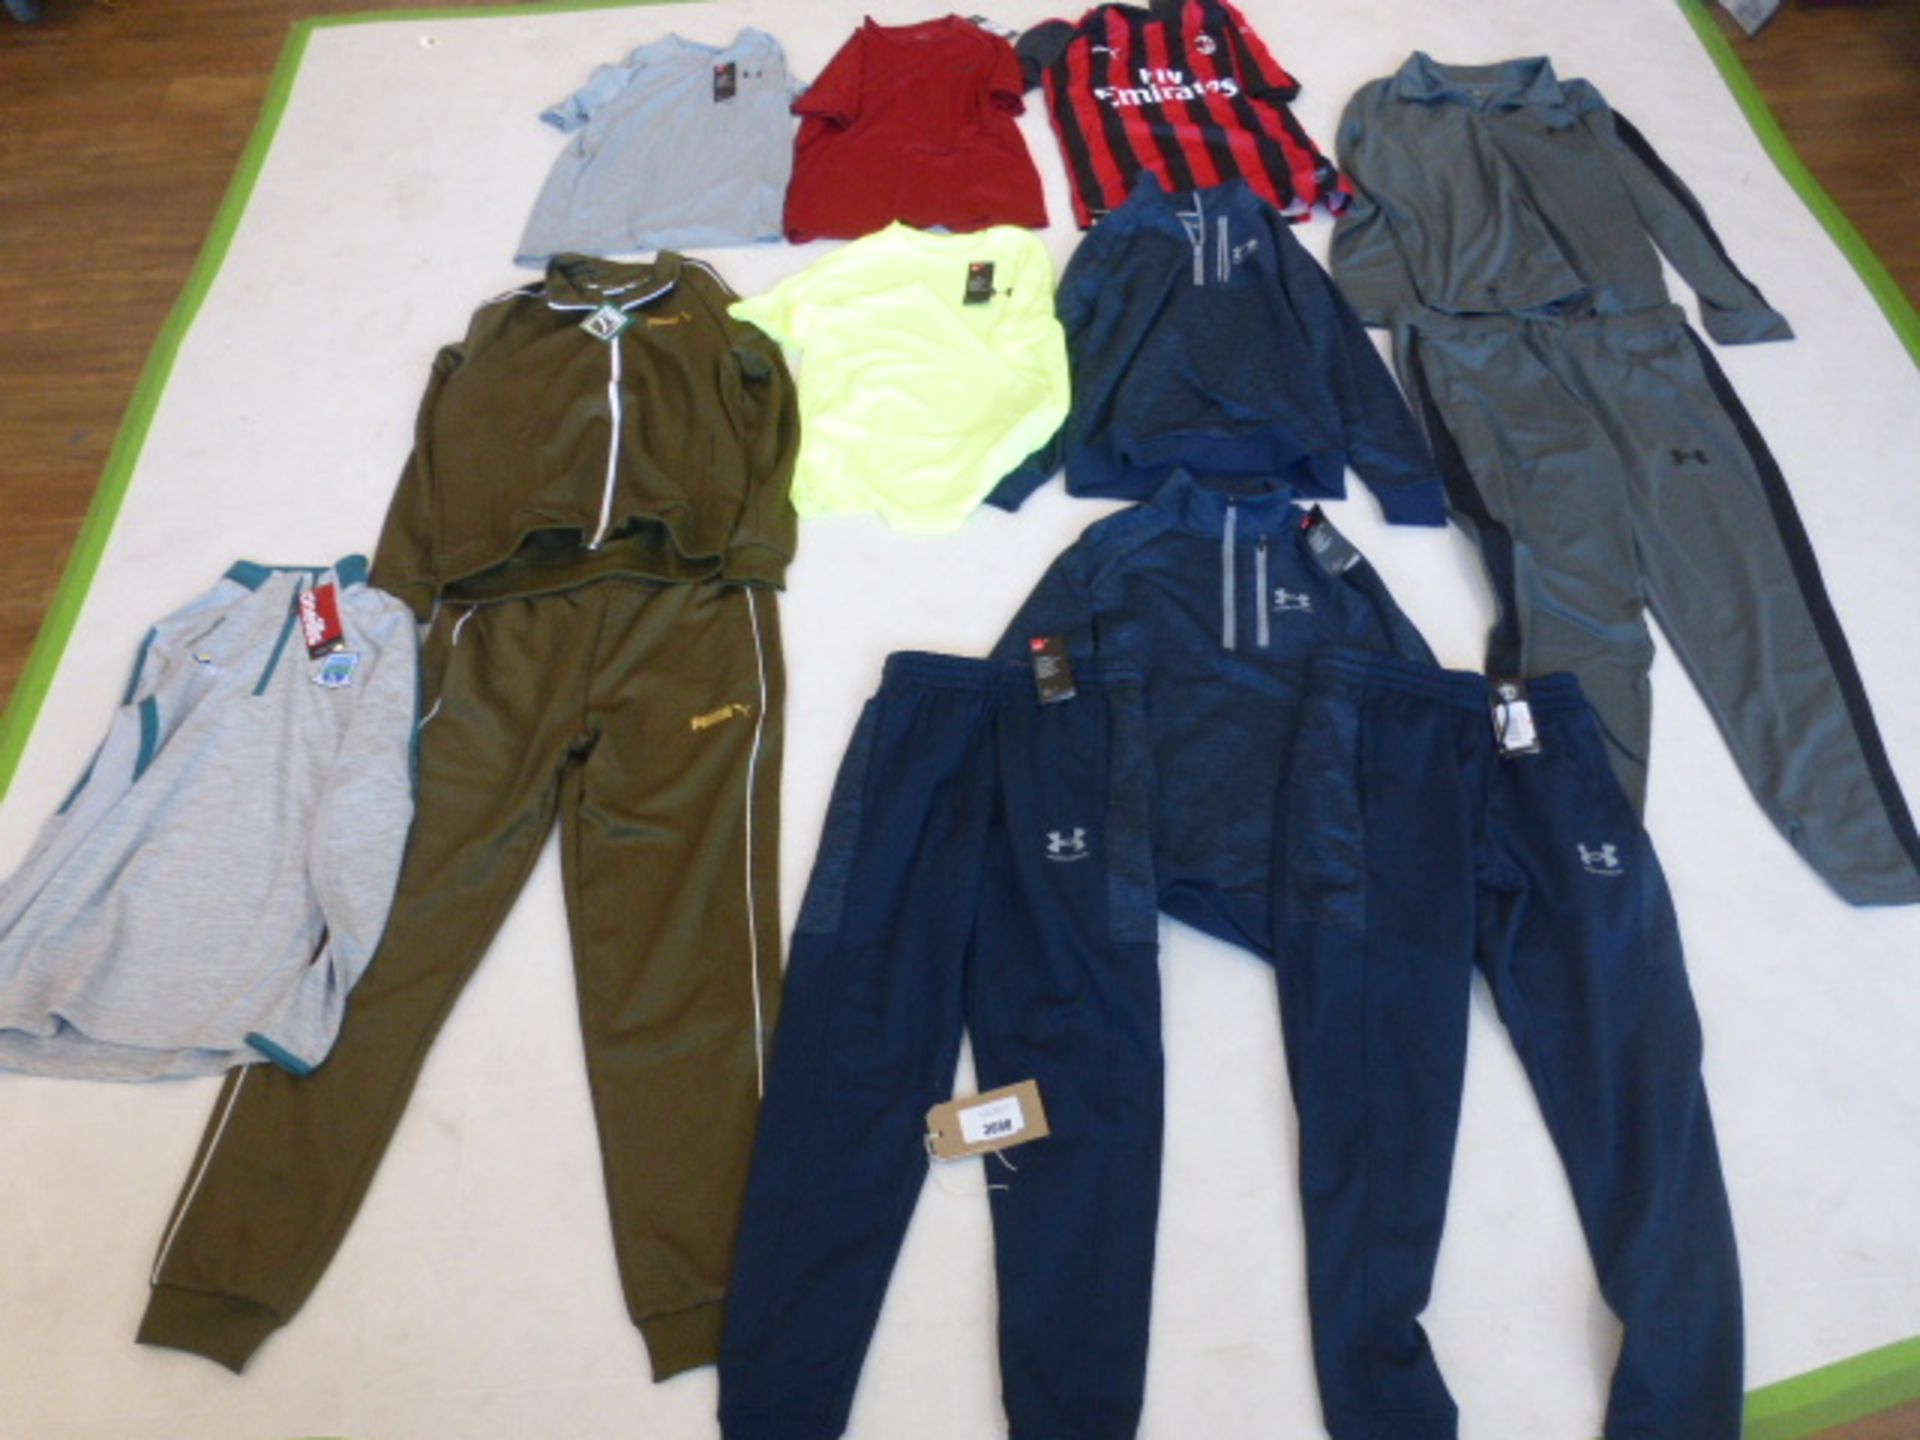 Assorted sportswear, including Puma, Underarmour, O'Neills